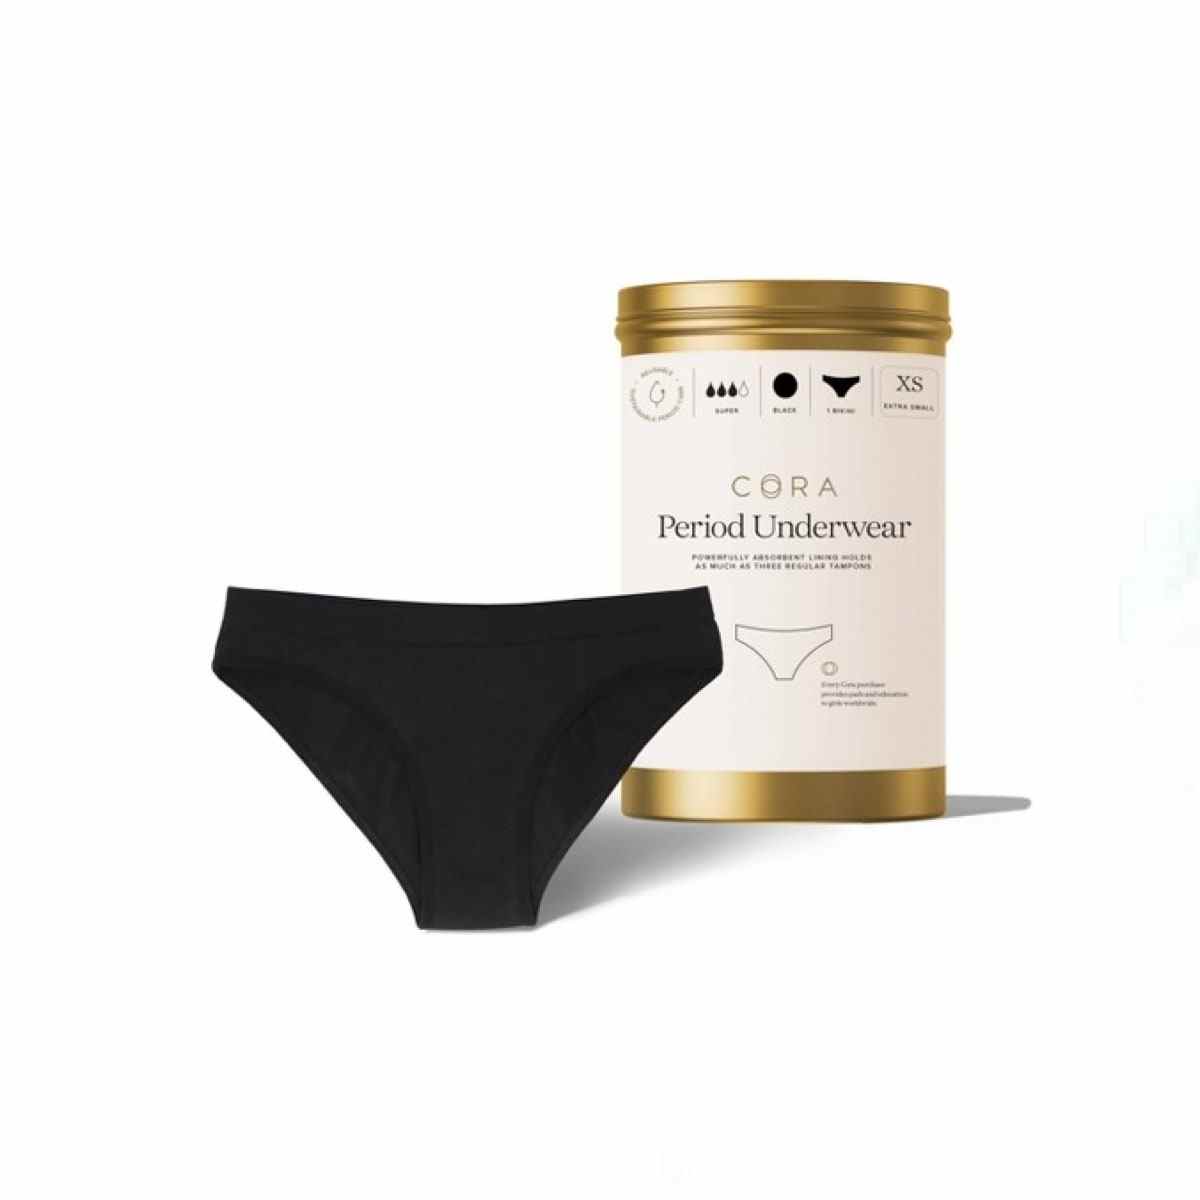 Schwarze Bikini-Unterwäsche aus der Cora-Periode und Golddose auf weißem Hintergrund